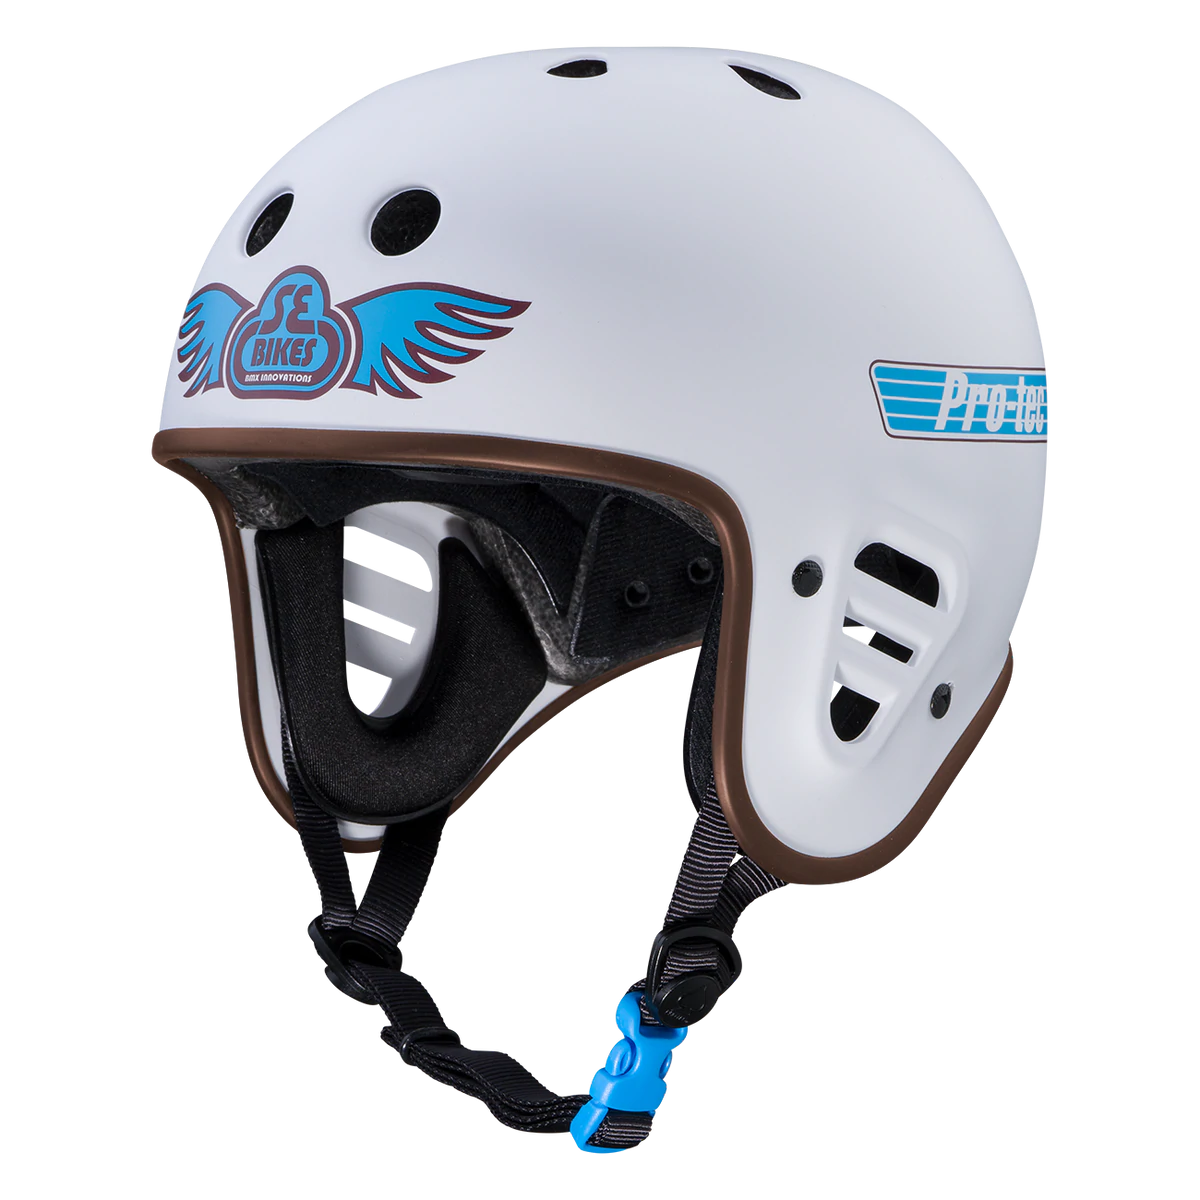 Pro-Tec x SE Bike Life Helmet